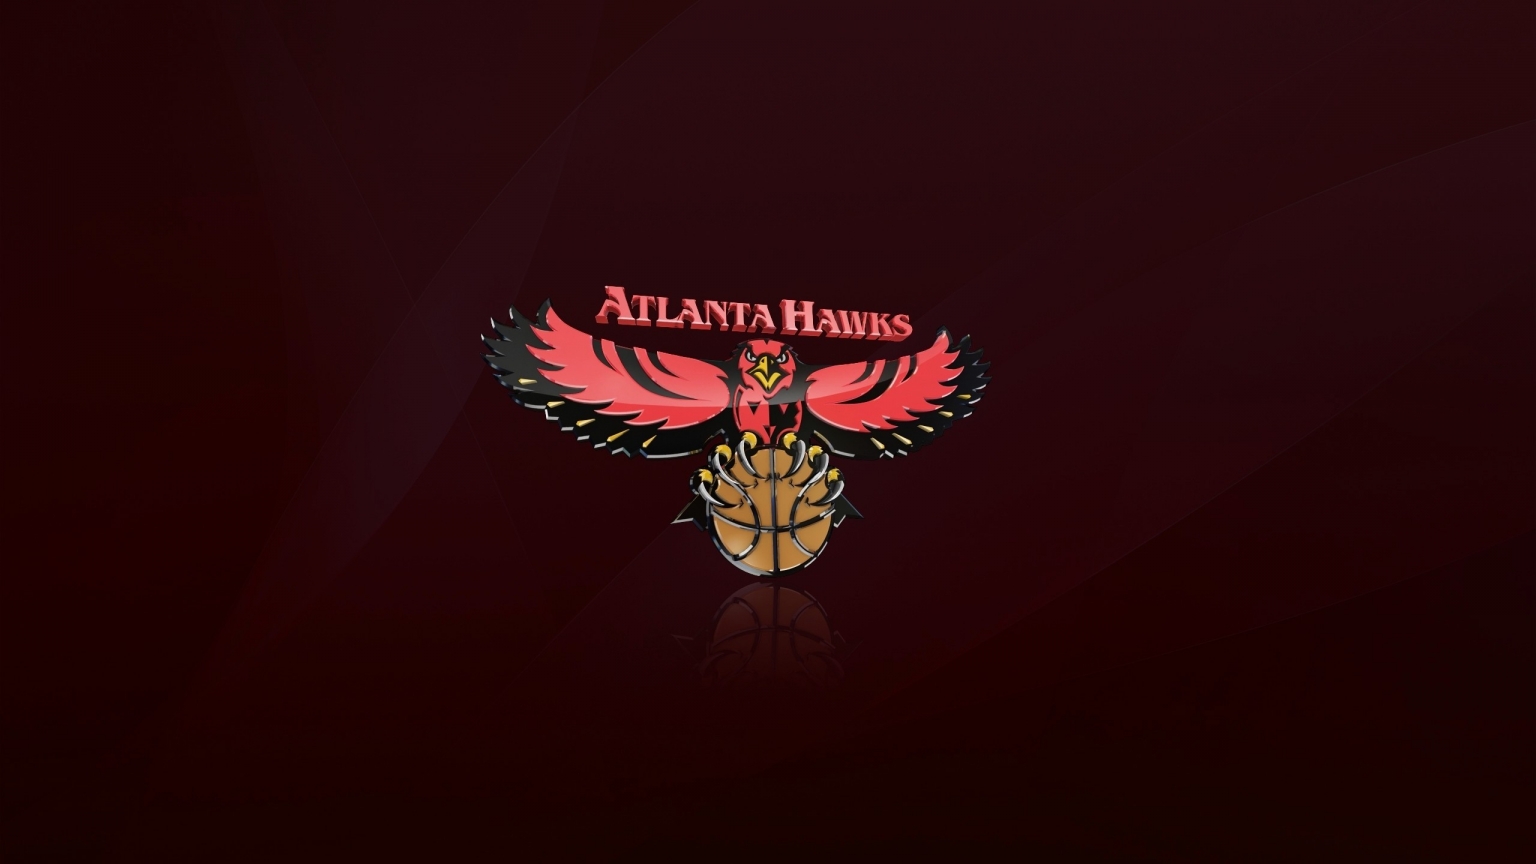 Atlanta Hawks Logo for 1536 x 864 HDTV resolution